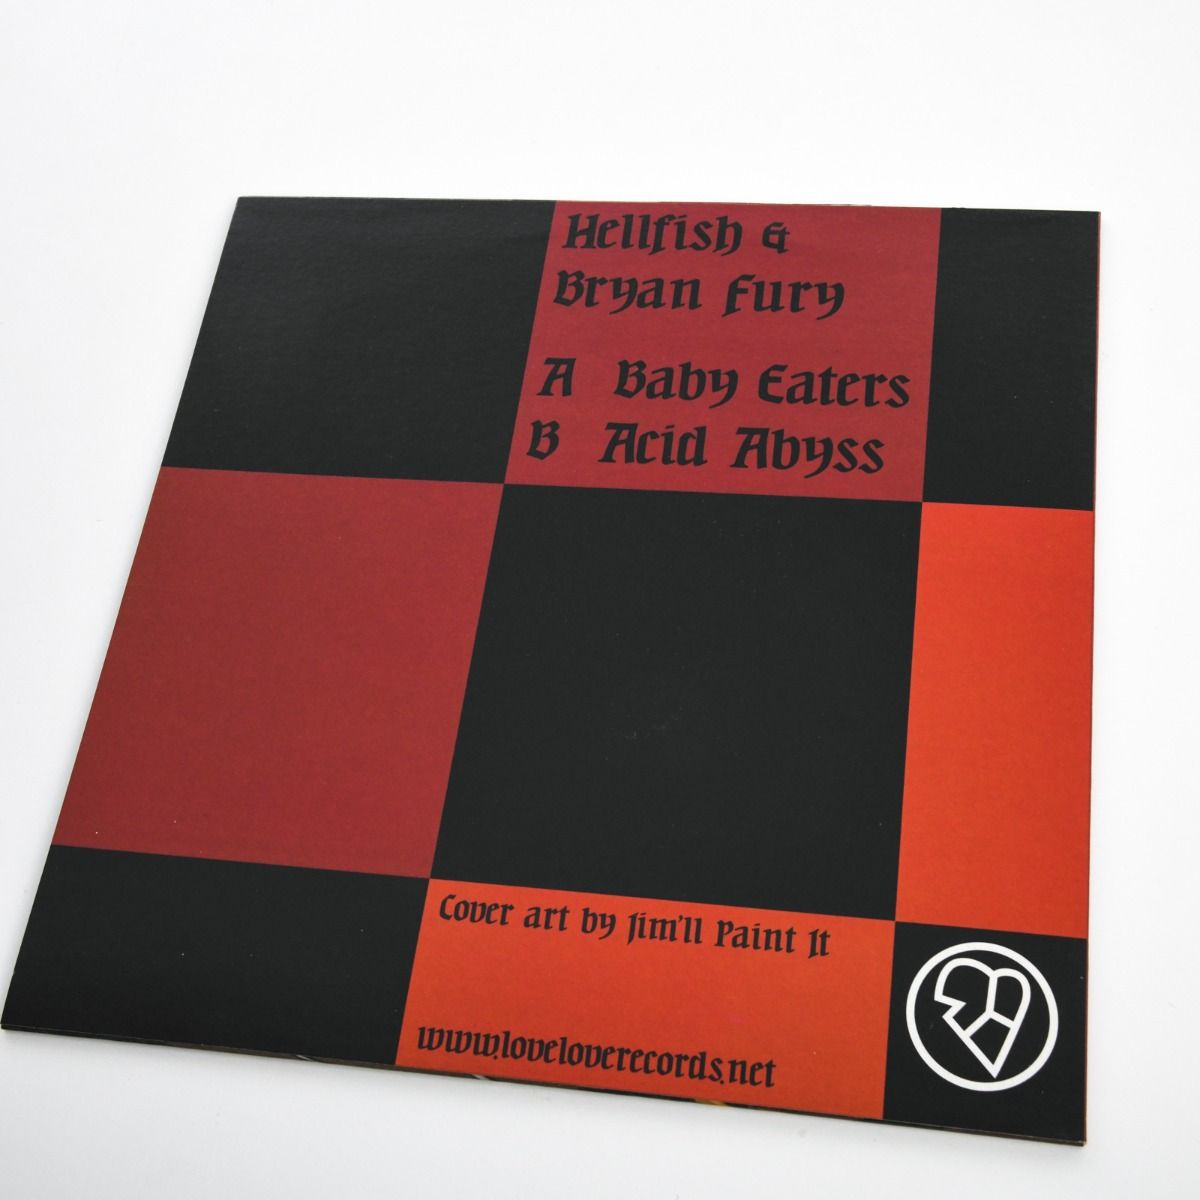 Hellfish & Bryan Fury – Baby Eaters 12"